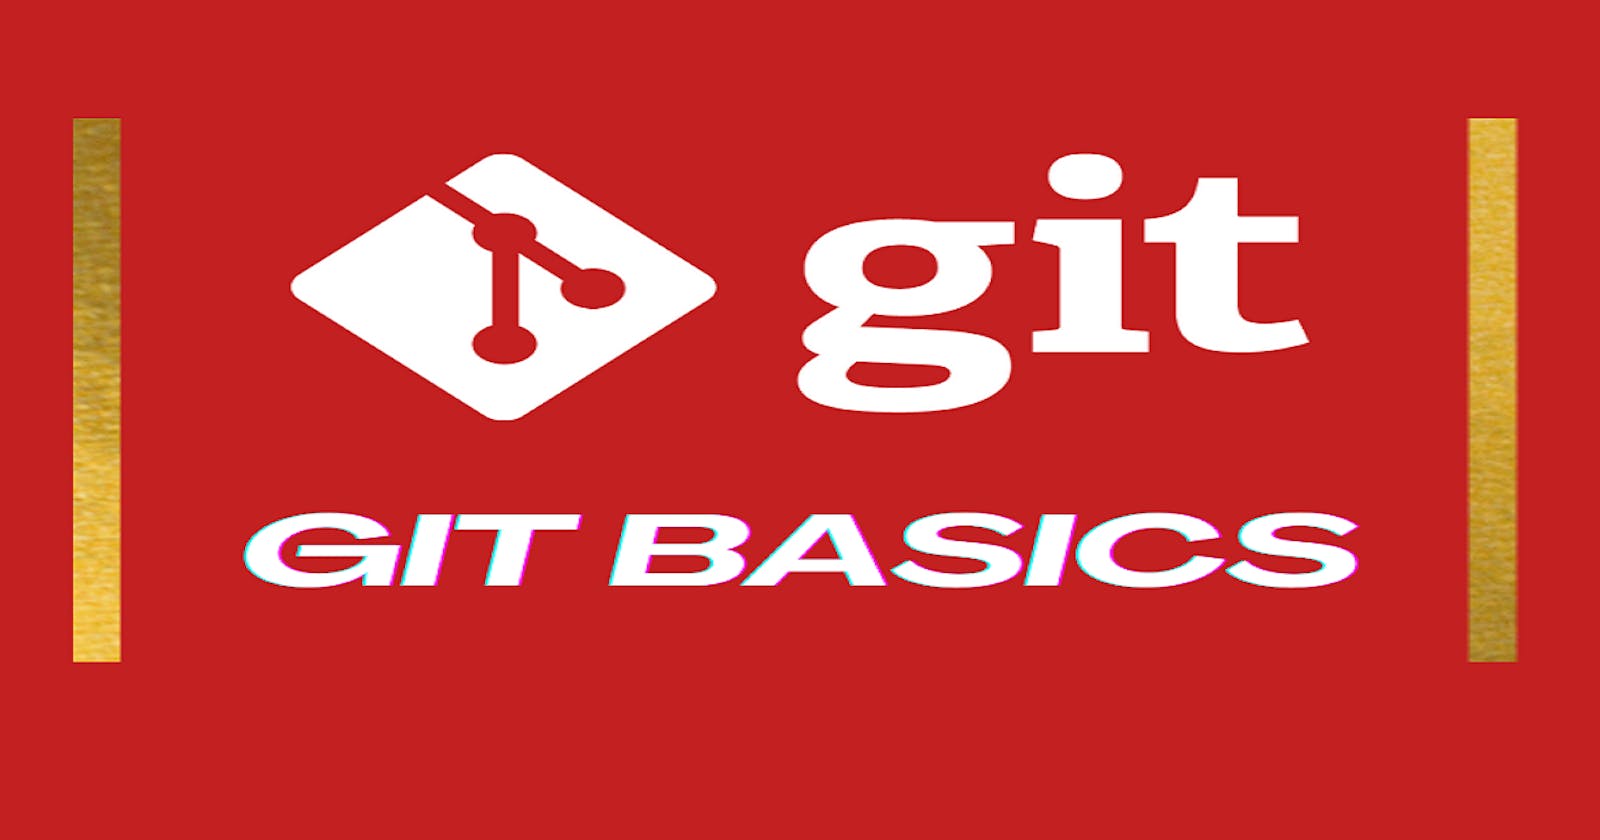 Basic Git